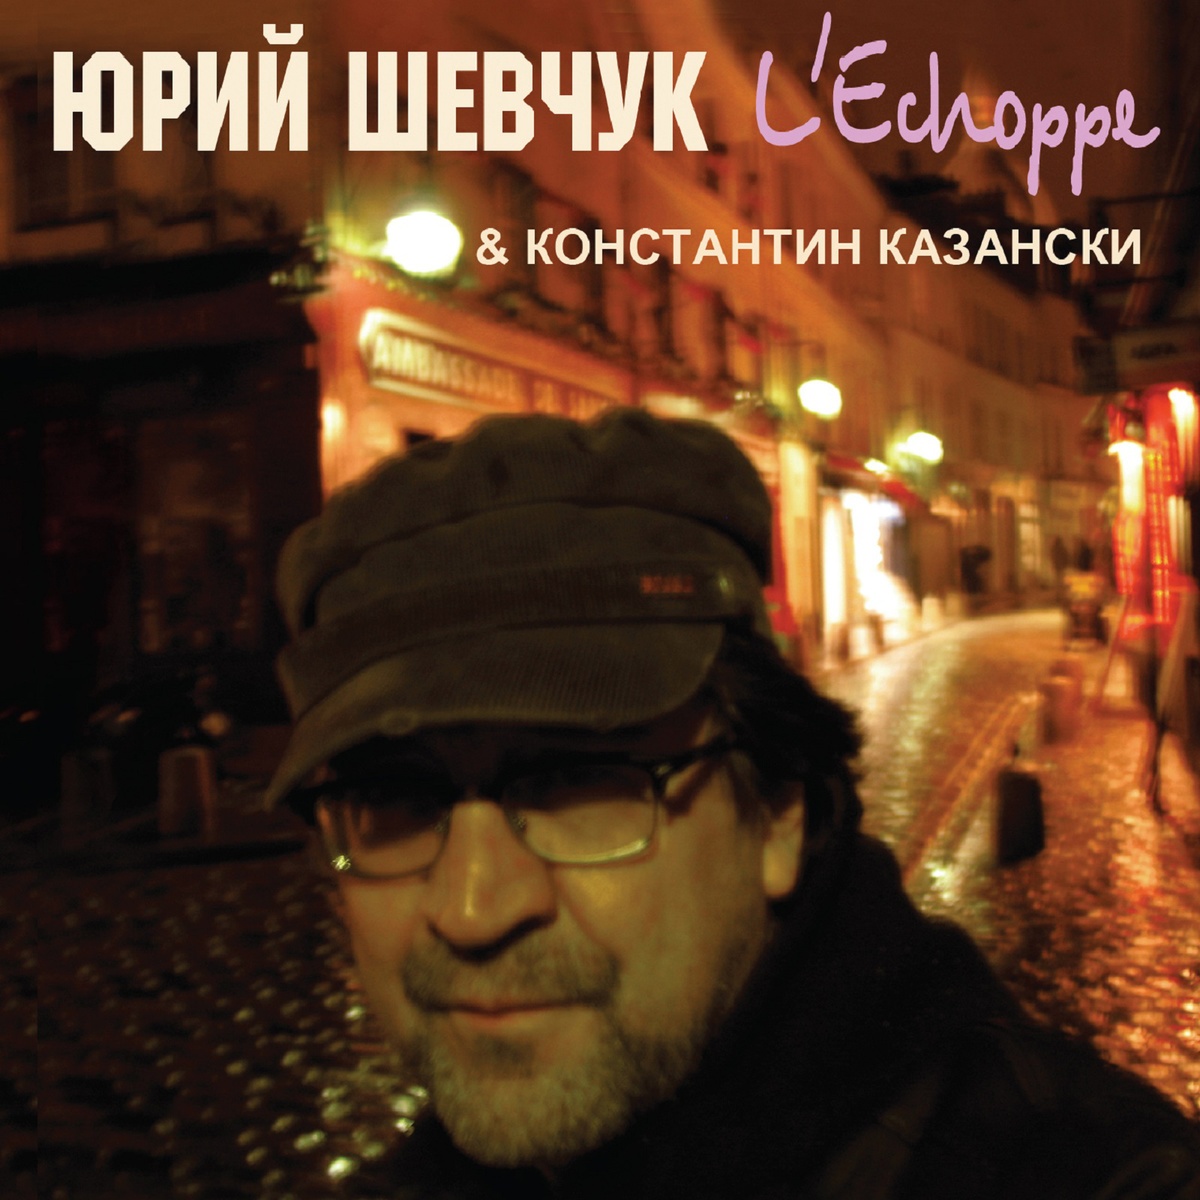 CD Шевчук Юрий "L'Echoppe" в Киеве